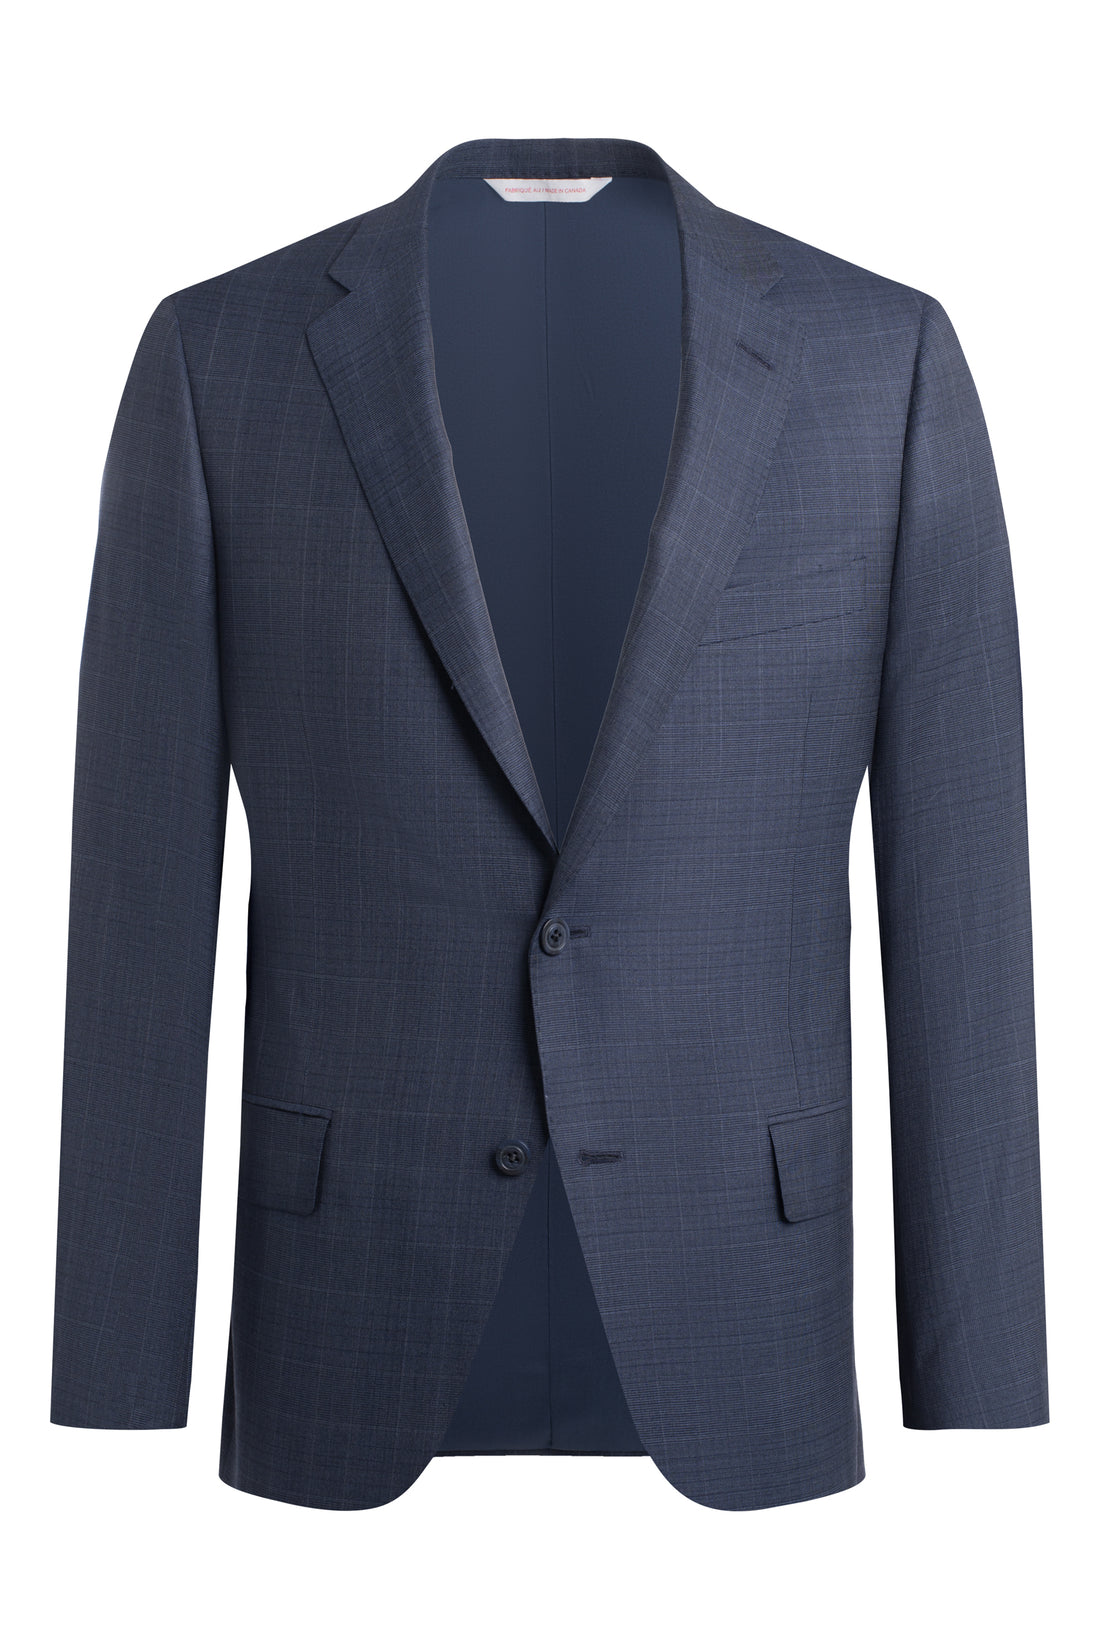 Blue Plaid Performance Suit front jacket